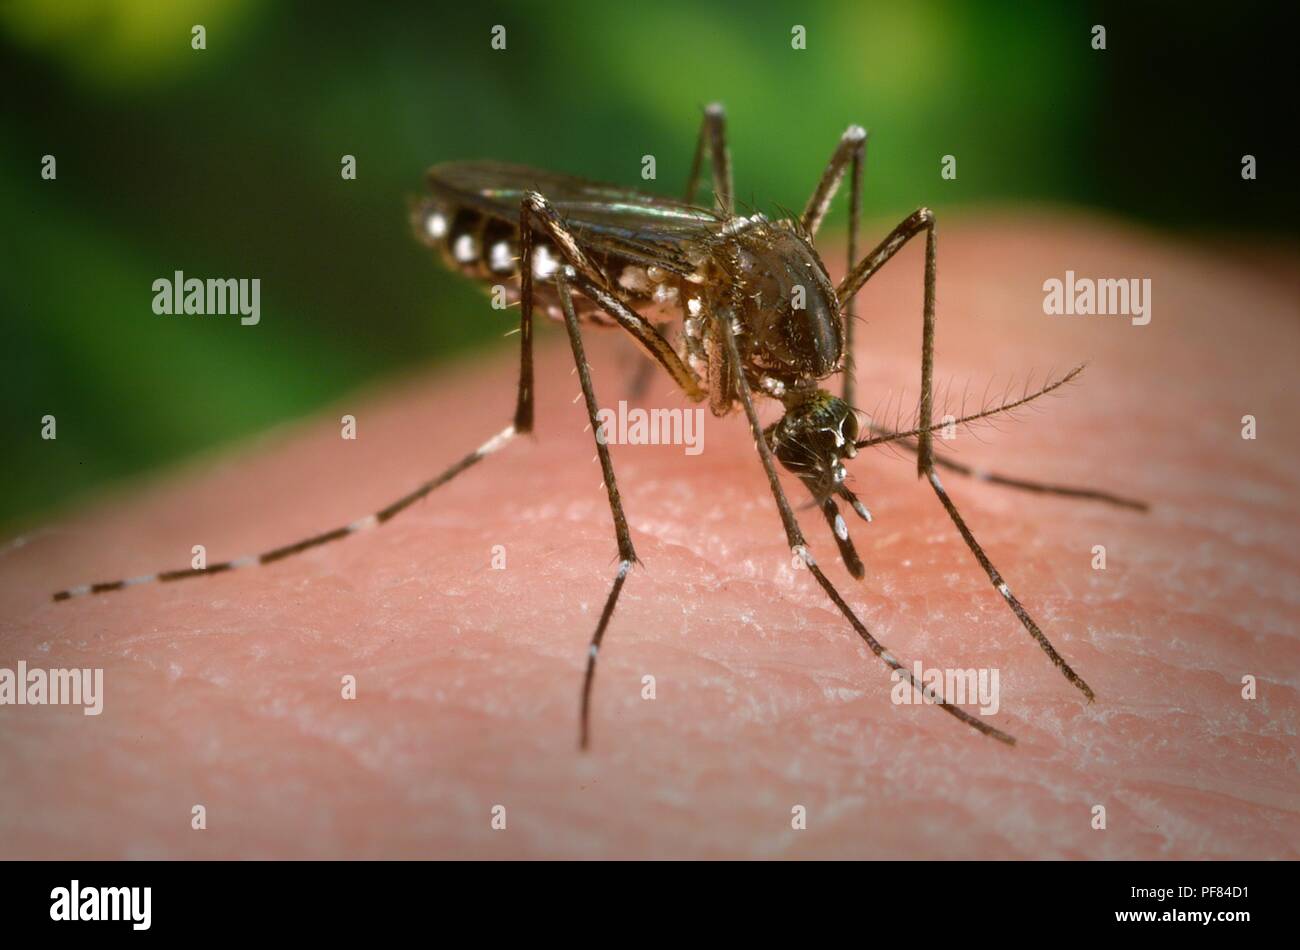 Femmine Aedes aegypti mosquito nel processo di cercare un sito penetrabili sulla superficie della pelle dell'ospite umano, 2006. Immagine cortesia di centri per il controllo delle malattie (CDC) / James Gathany. () Foto Stock